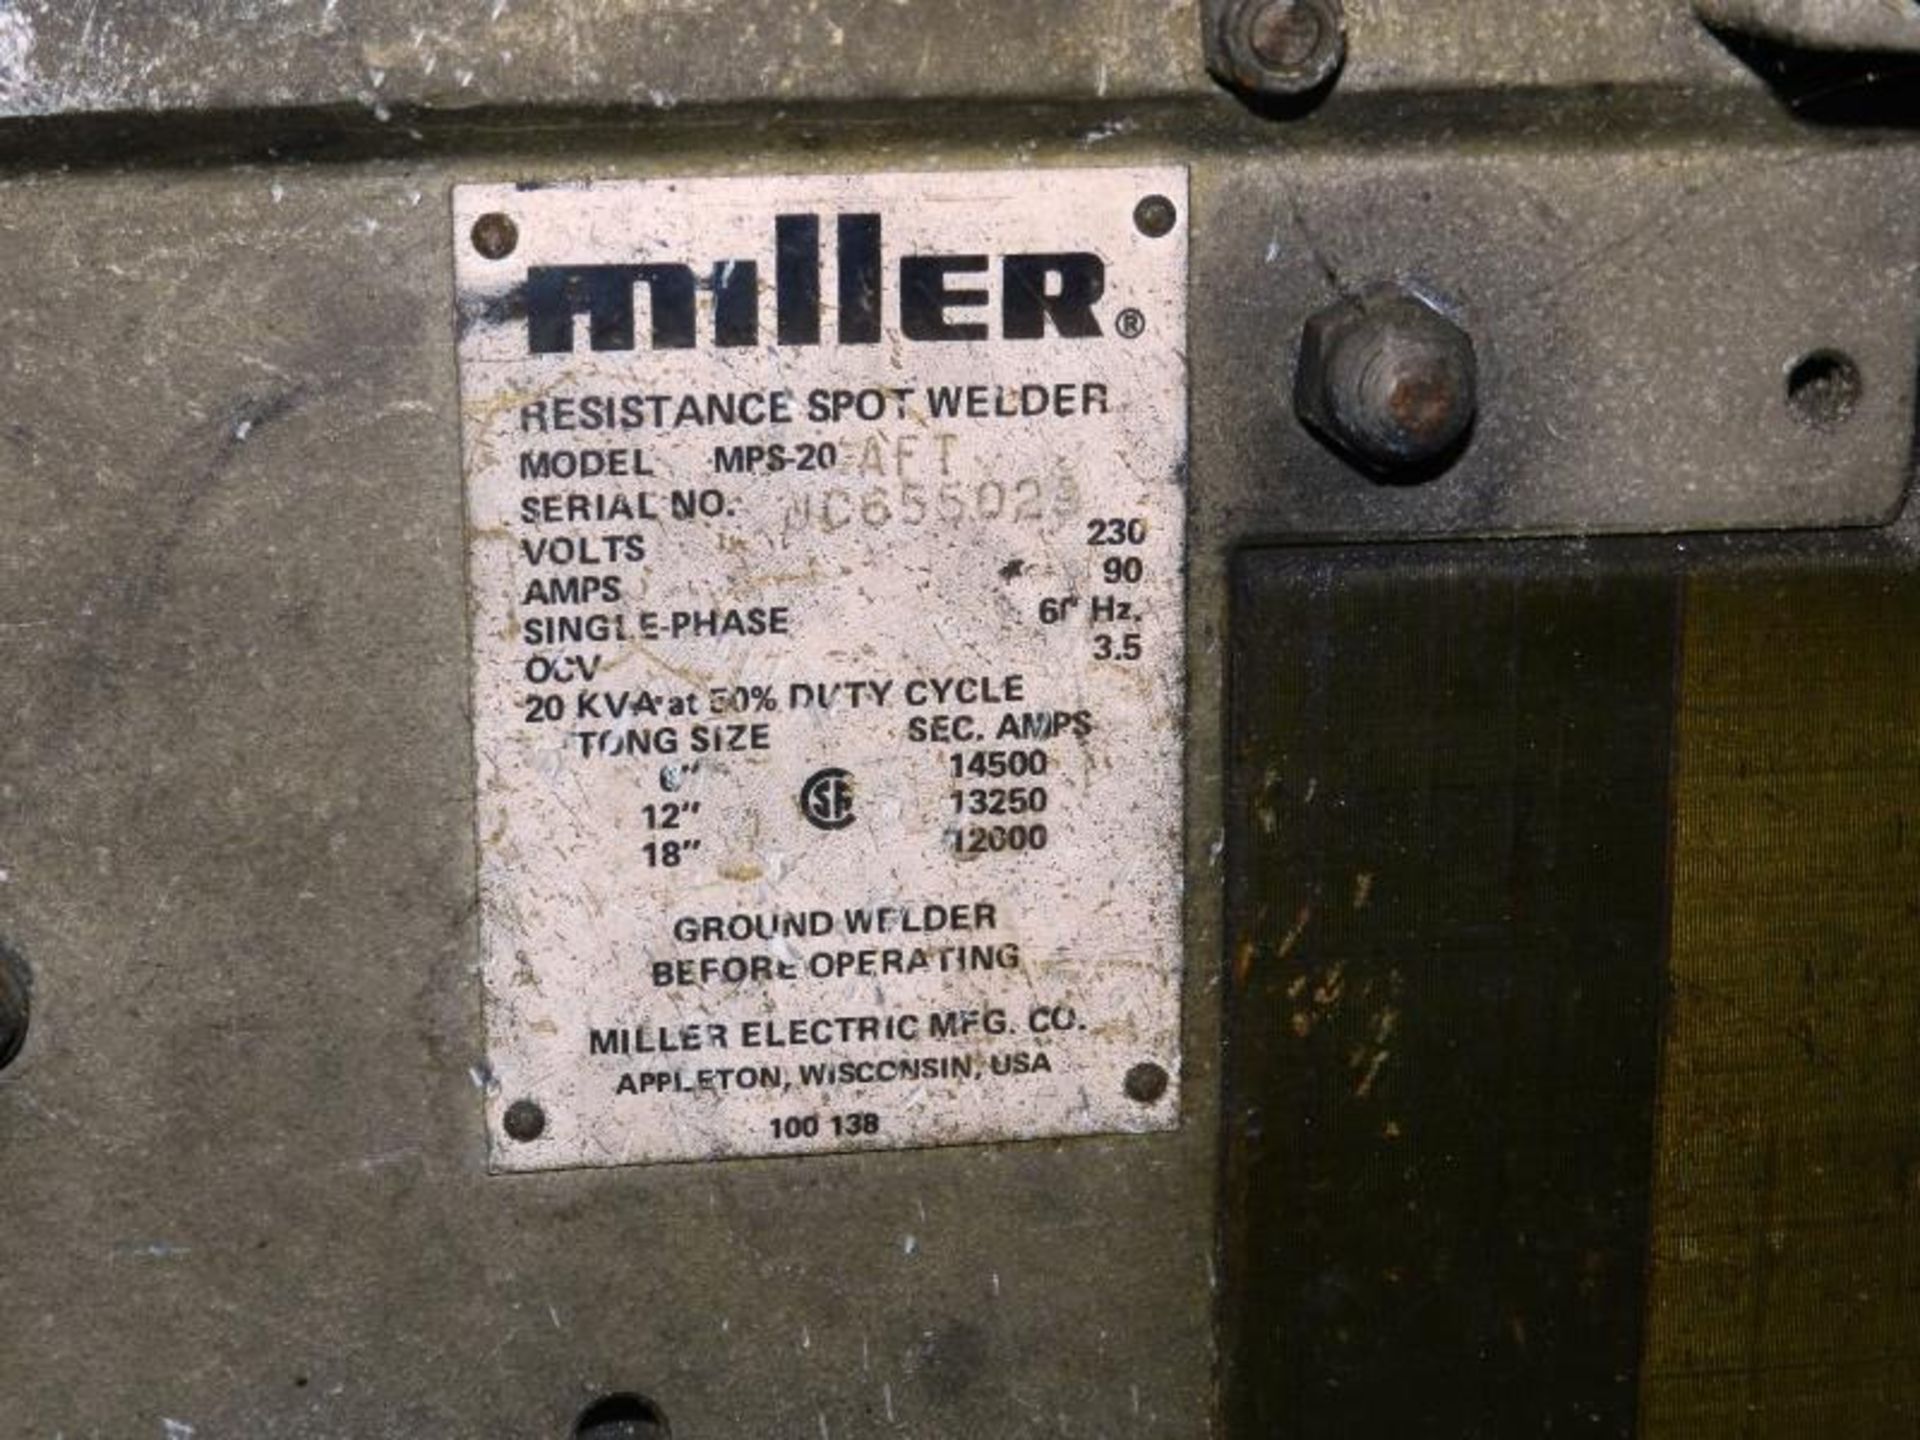 Miller Portable Spot Welder Mps-20 Aft 20 Kva 90 Amp - Image 8 of 8